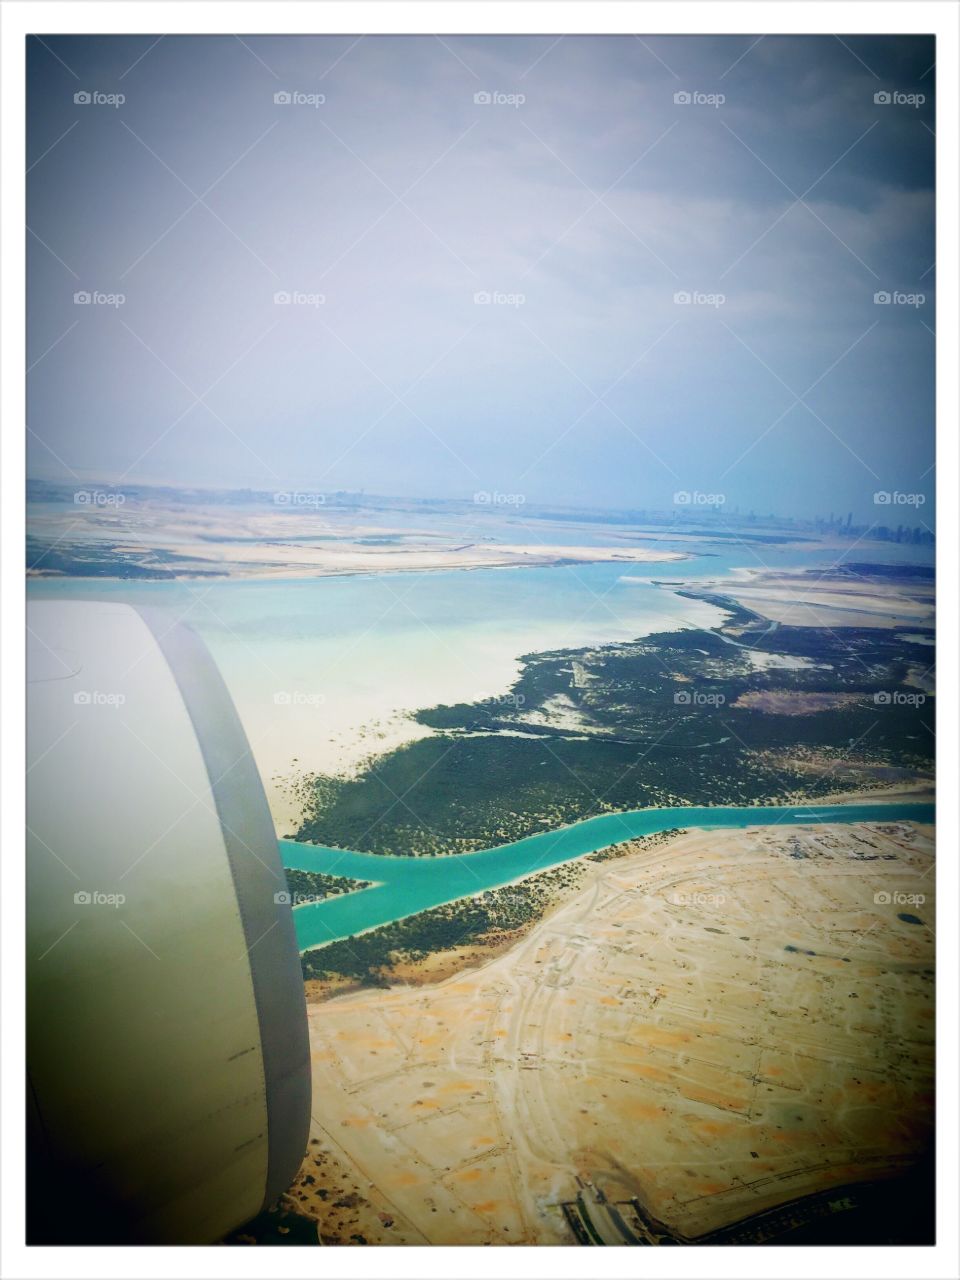 In Plane View: Abu Dhabi. In Plane View: Abu Dhabi